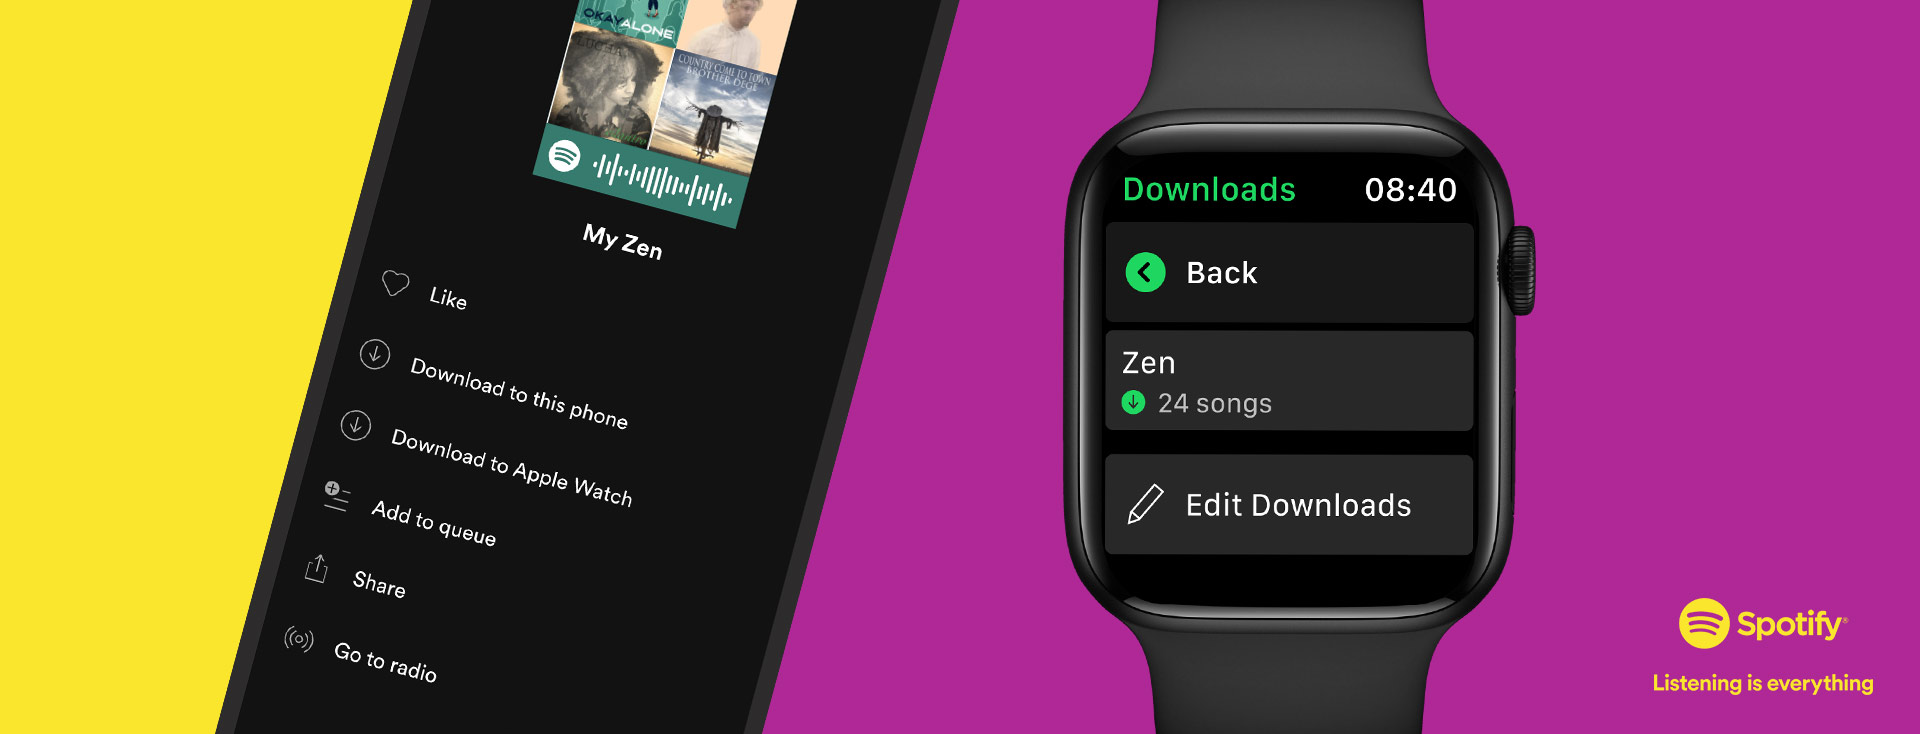 Spotify: Ahora descarga tus playlists, álbumes y podcasts favoritos en el Apple Watch